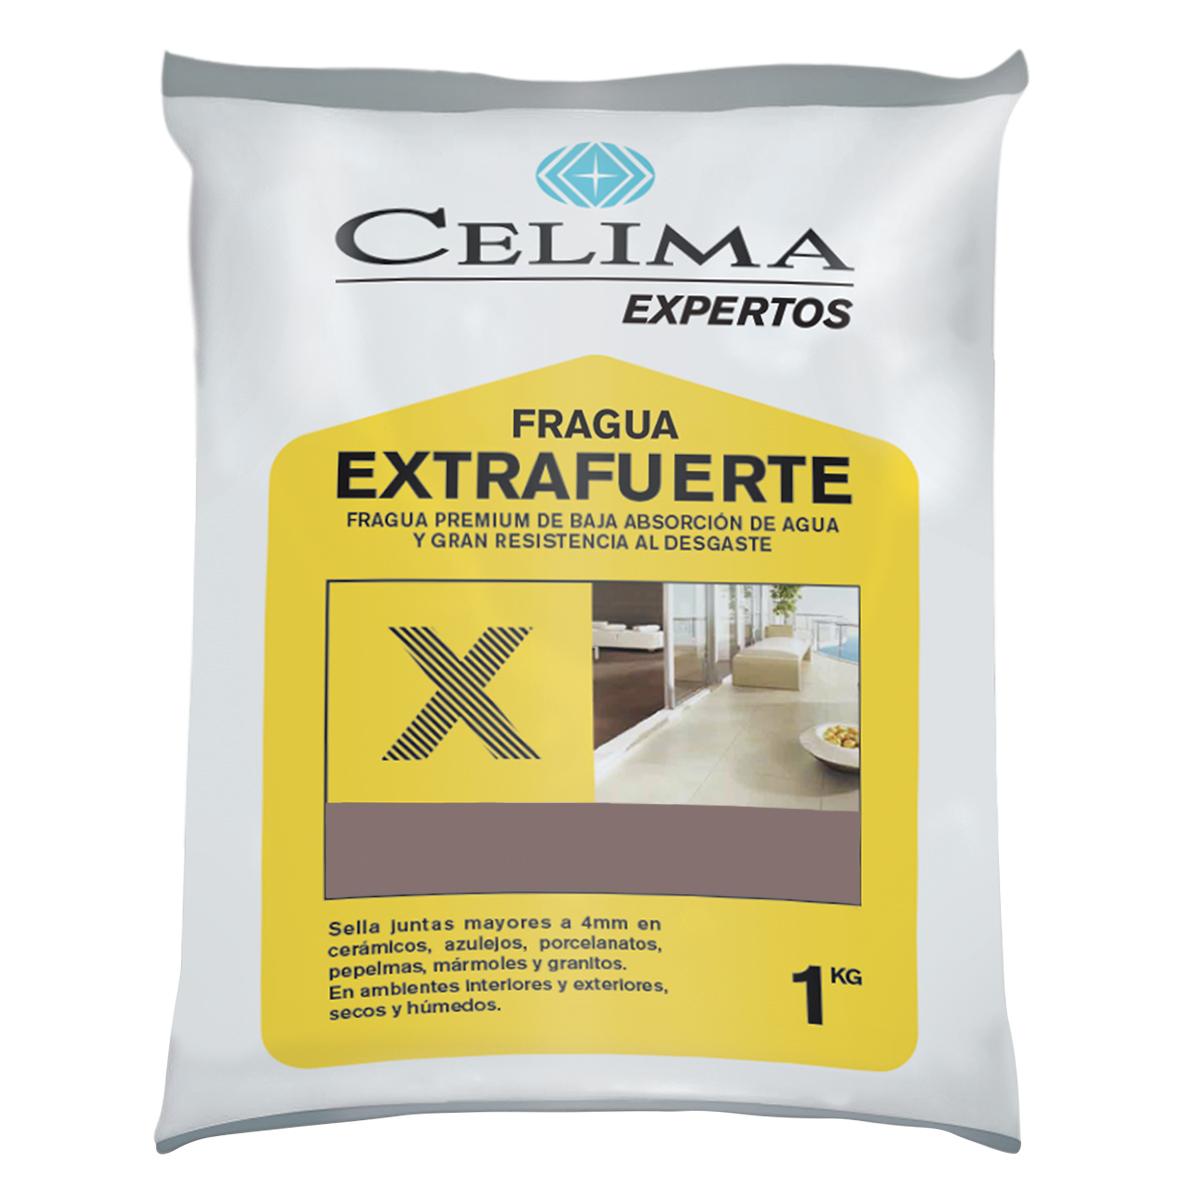 Fragua Premium Extrafuerte Café - 1 KG